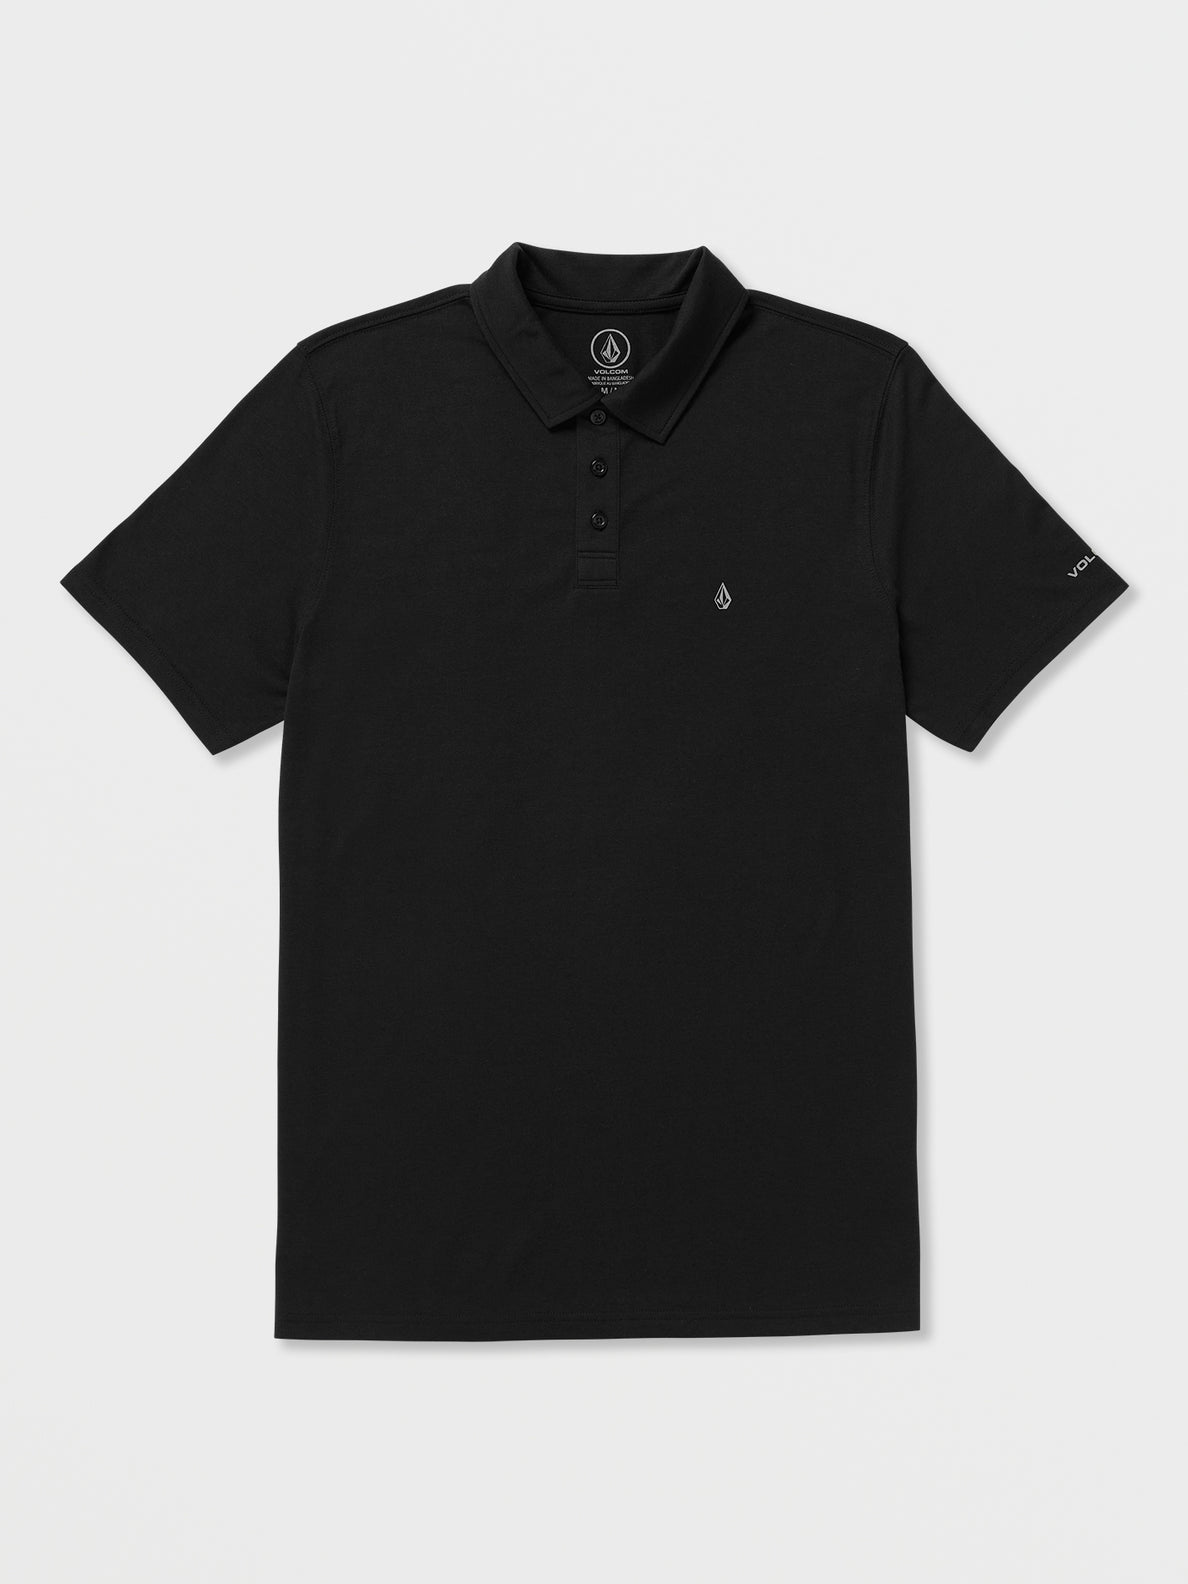 Nova Tech Polo Short Sleeve Shirt - Black